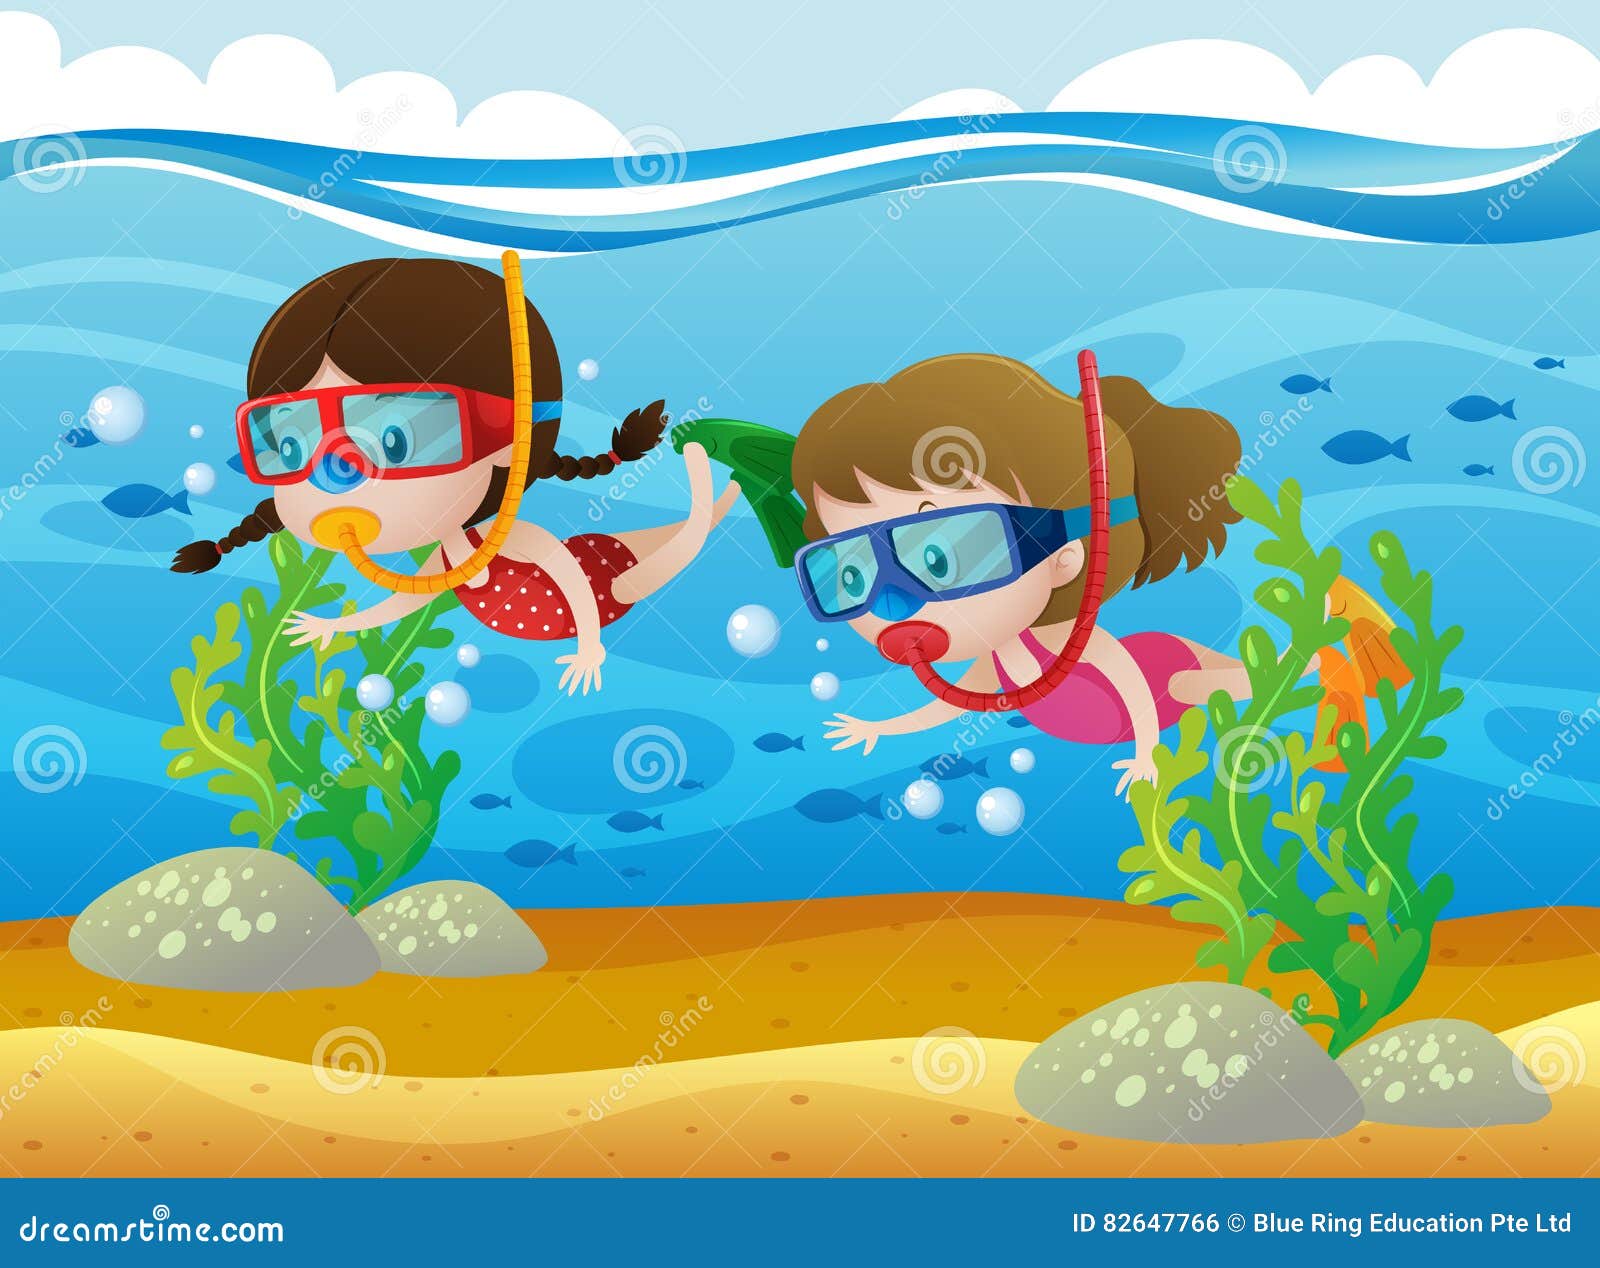 2024美人鱼岛潜水玩乐攻略,蓝天白云，海水干净，岛上自... 【去哪儿攻略】